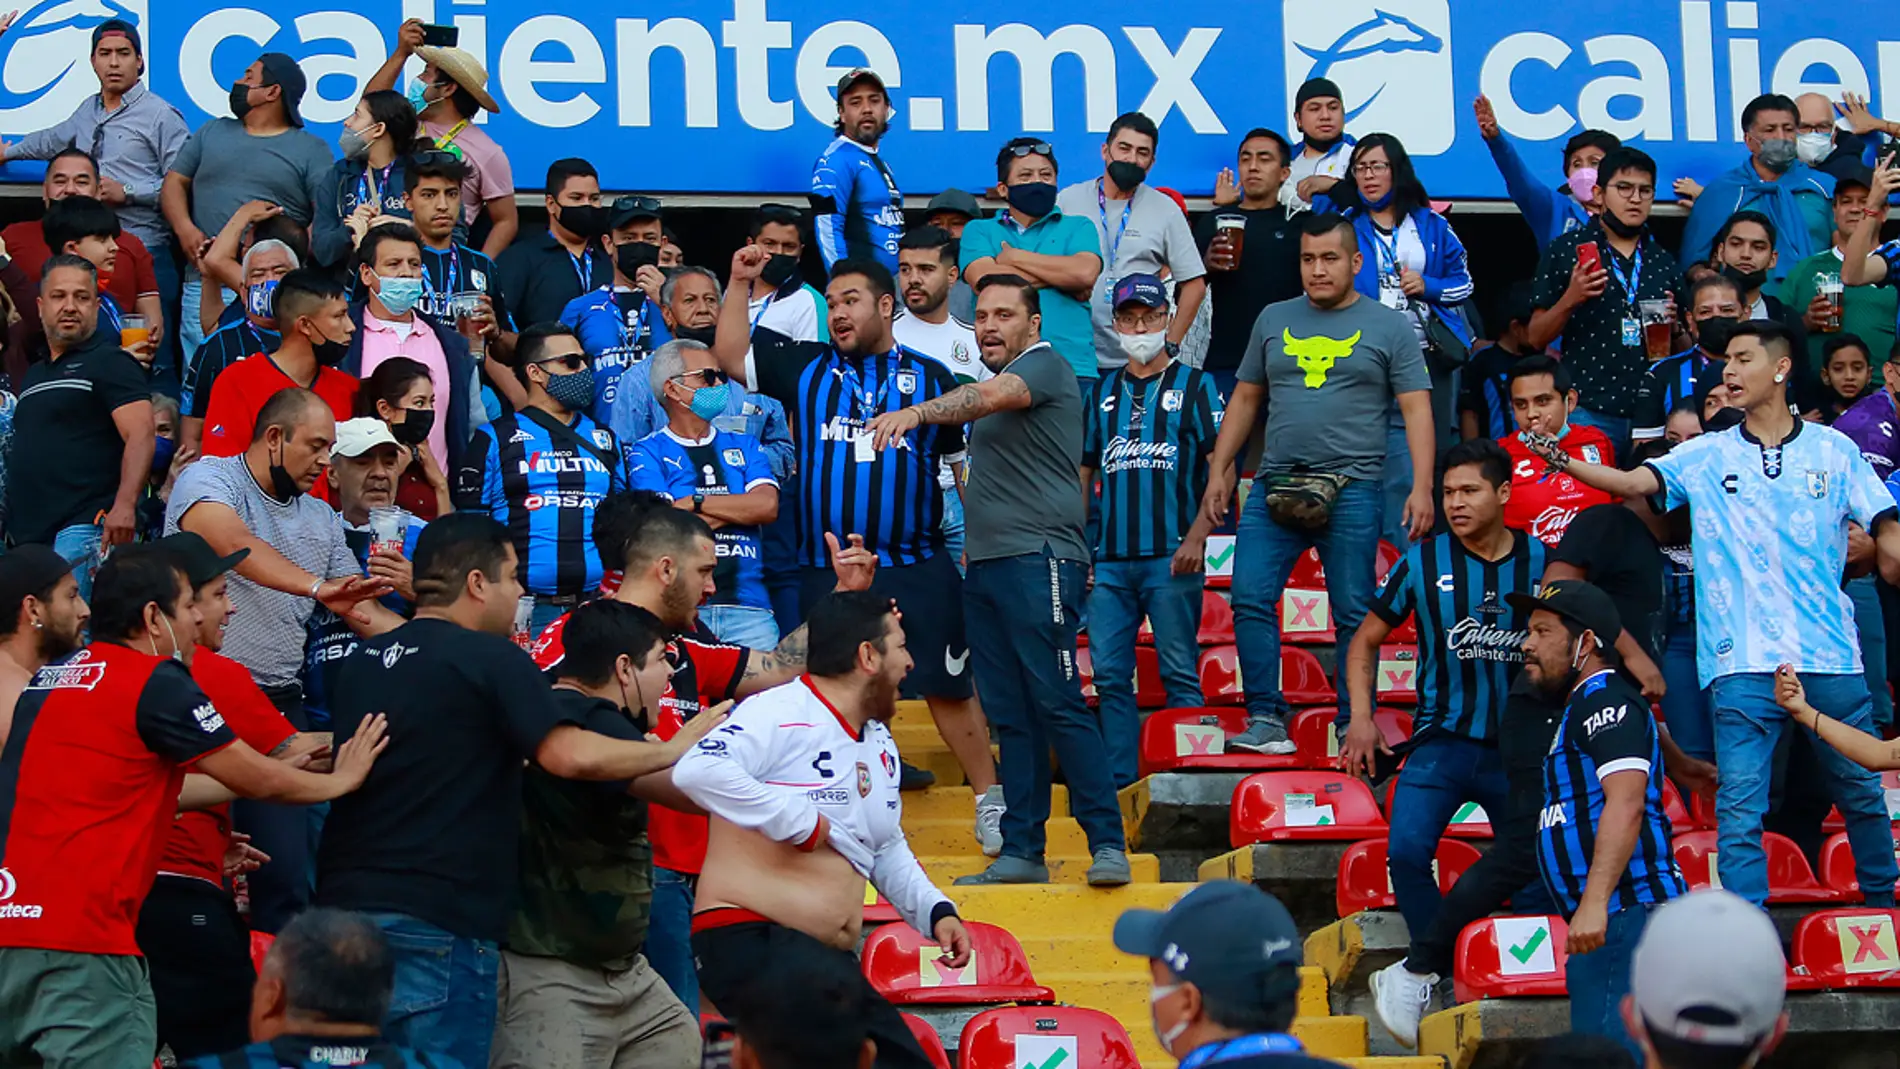 Incidentes en el estadio de fútbol de Querétaro